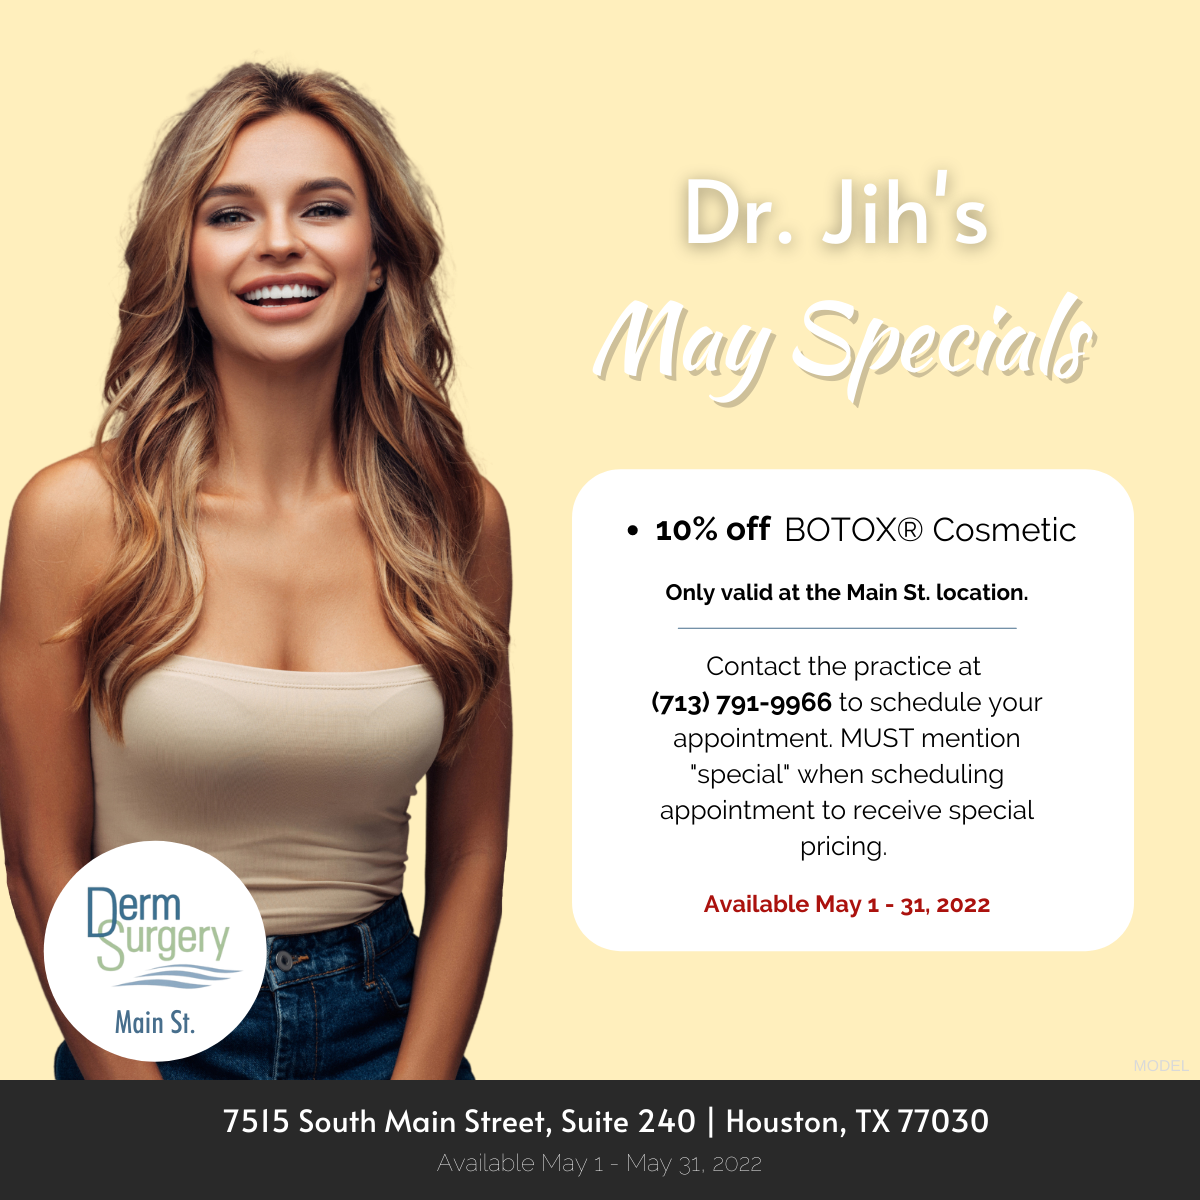 Dr. Jih's May Specials